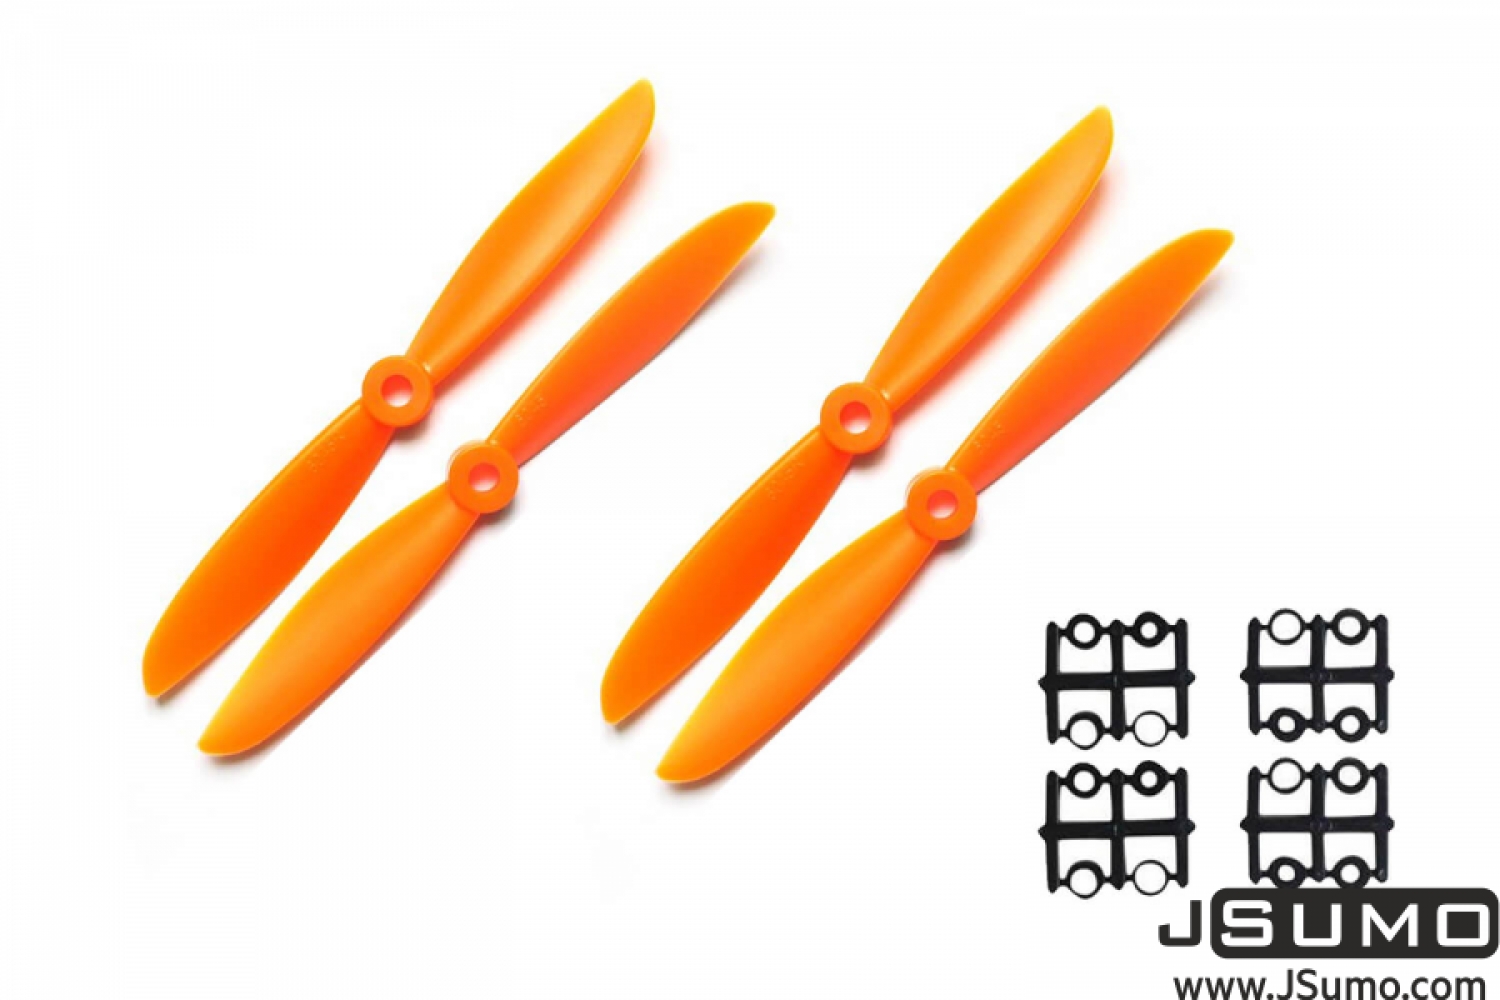 2 Blade 6045 Propeller Set - Orange (4pcs)